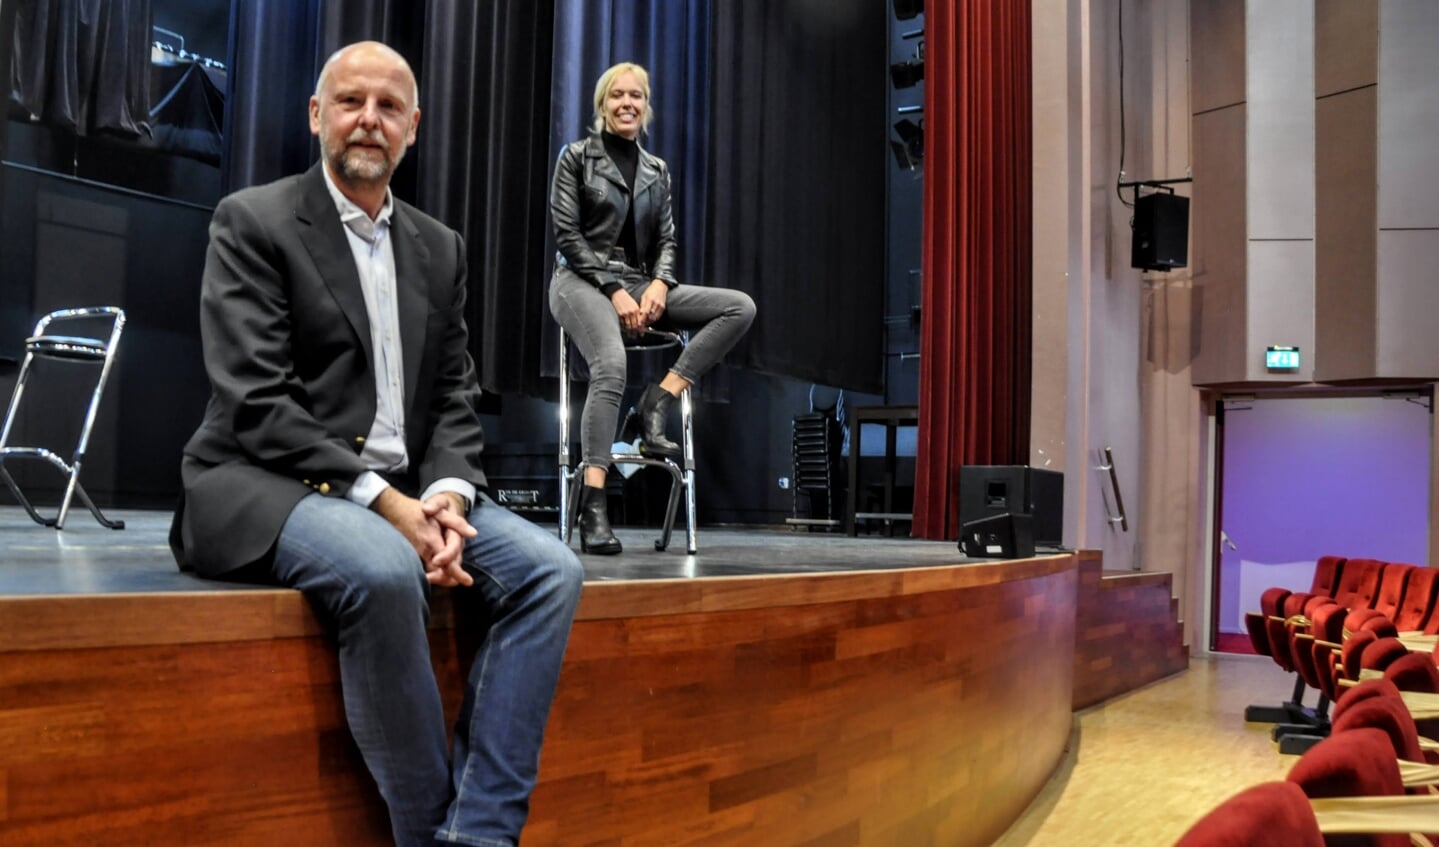 Theaterdirecteur Ronald de Wilde en op de achtergrond Annerieke Claassen, projectleider Cultuur & Samenleving.